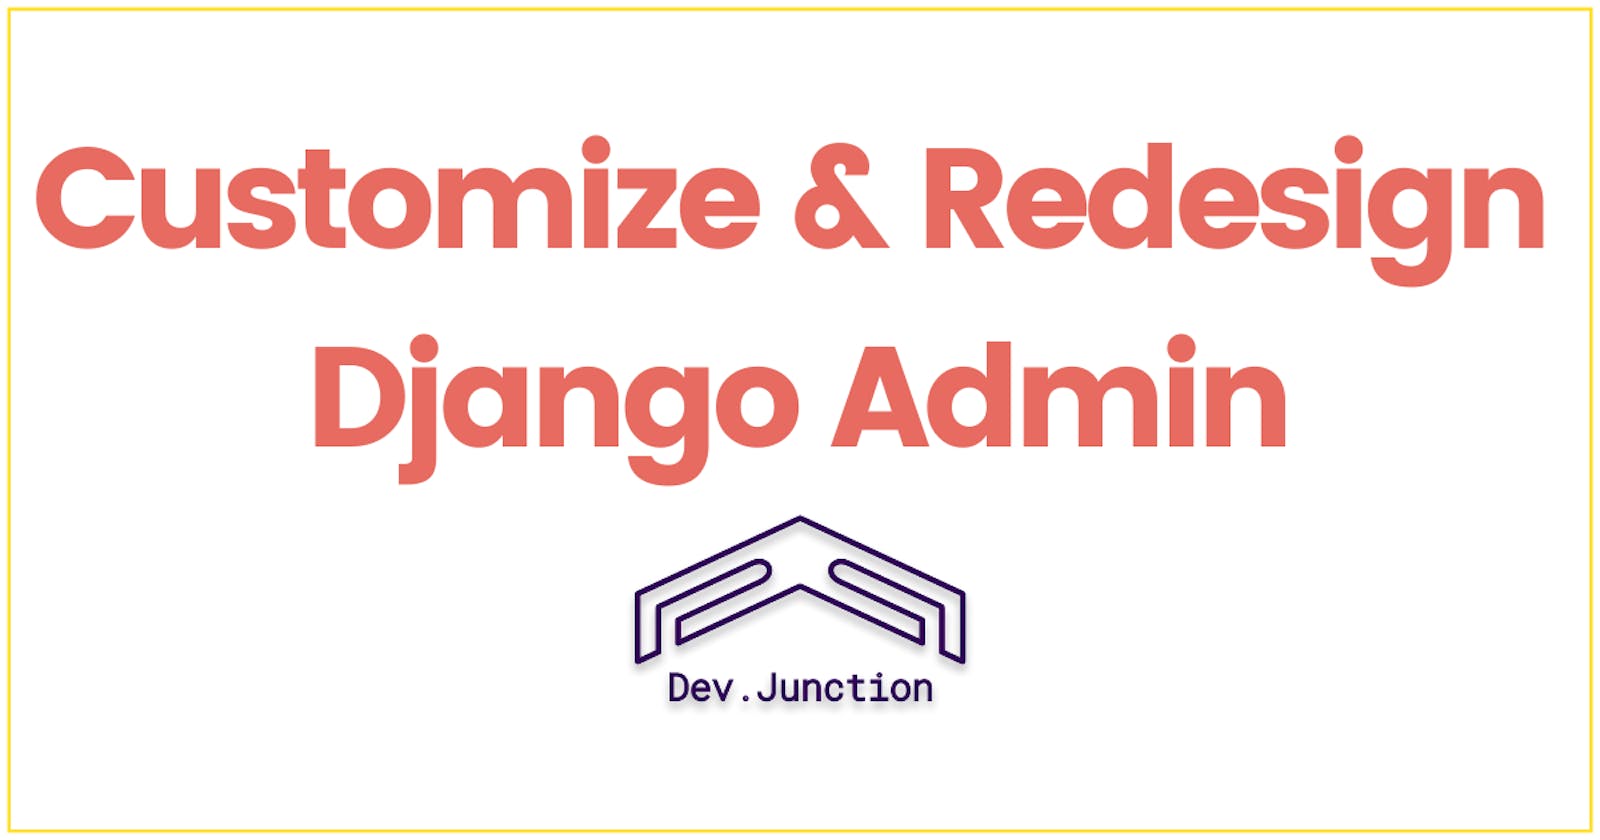 How to customize & redesign the Django Admin panel?